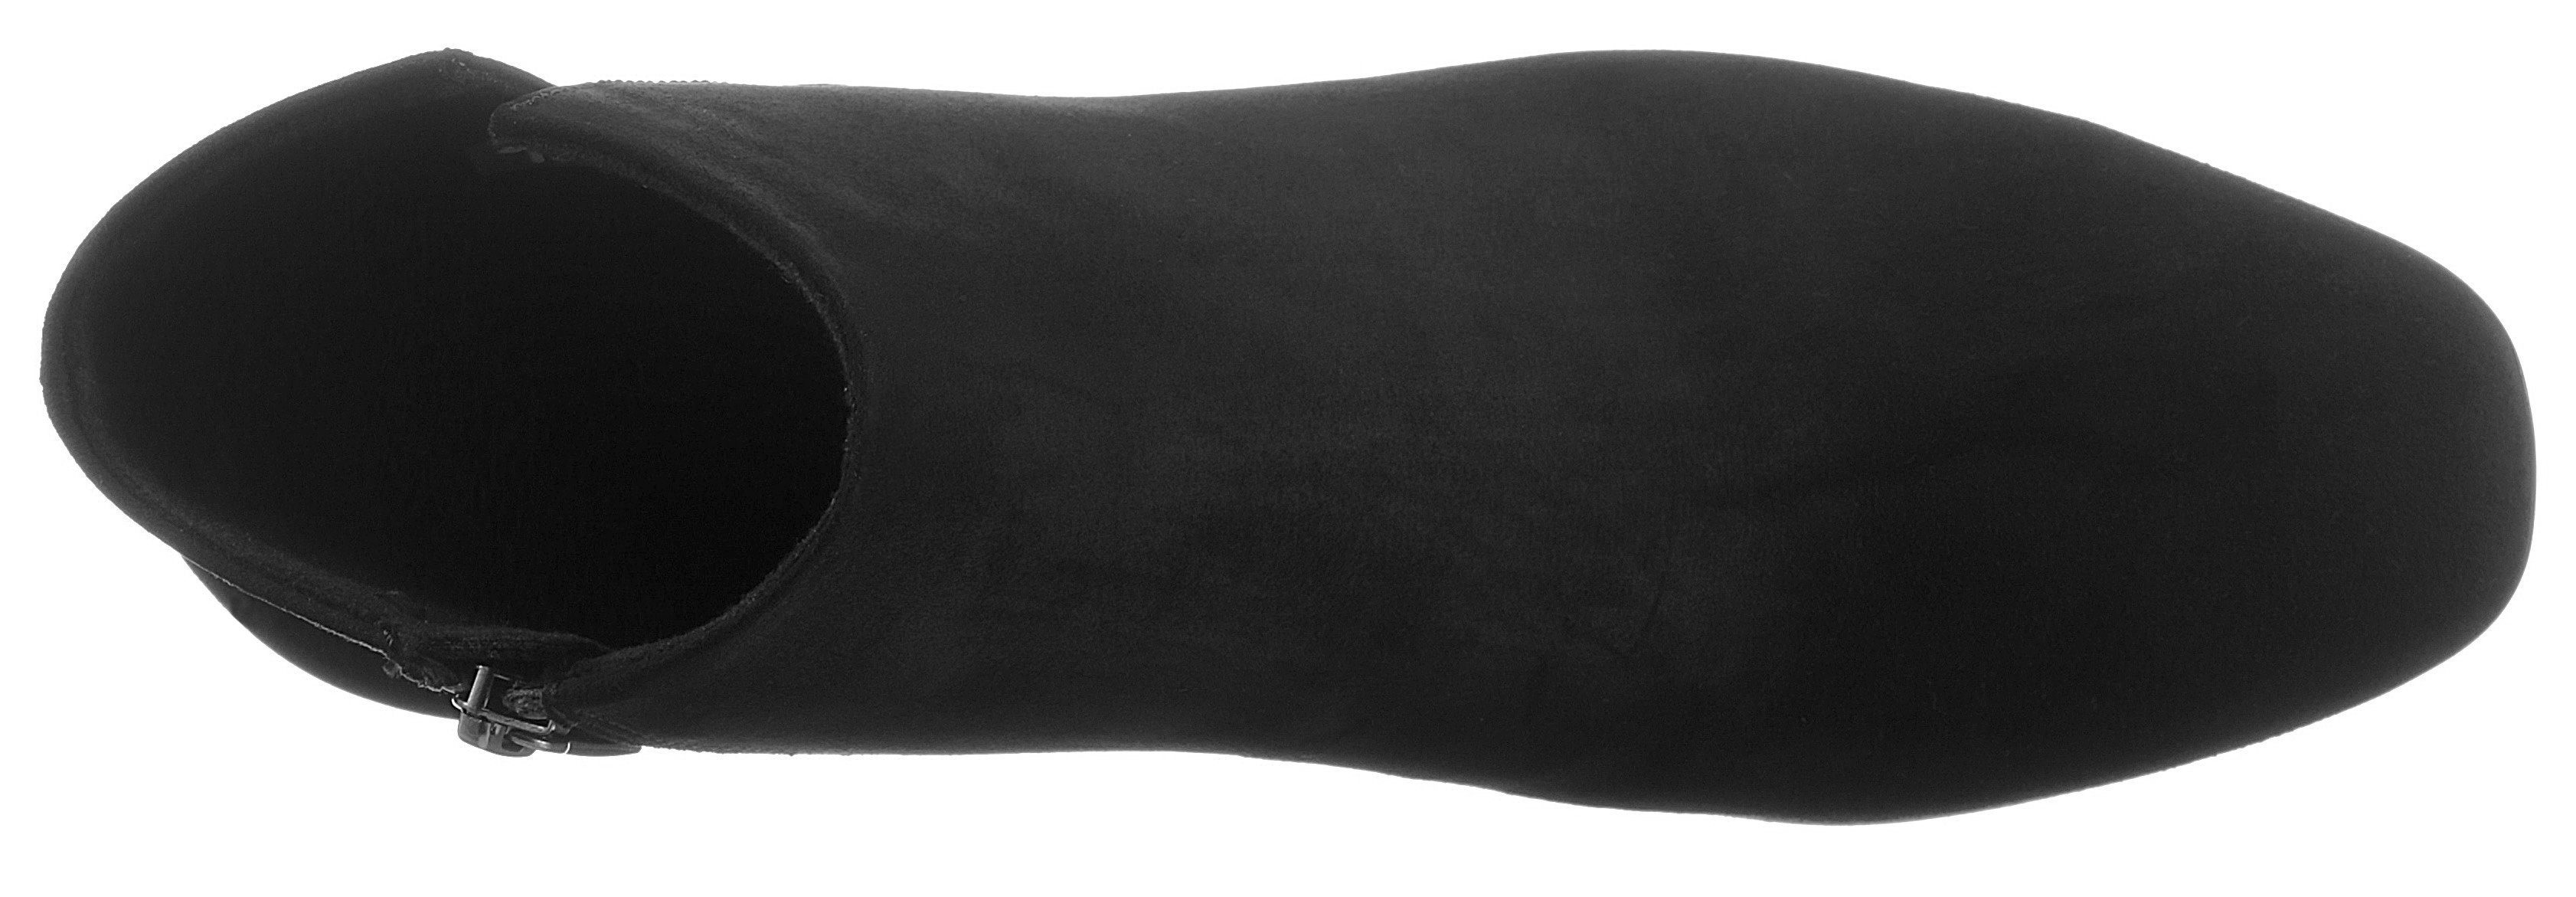 Tamaris Stiefelette rutschhemmender ANTIslide-Ausstattung mit schwarz